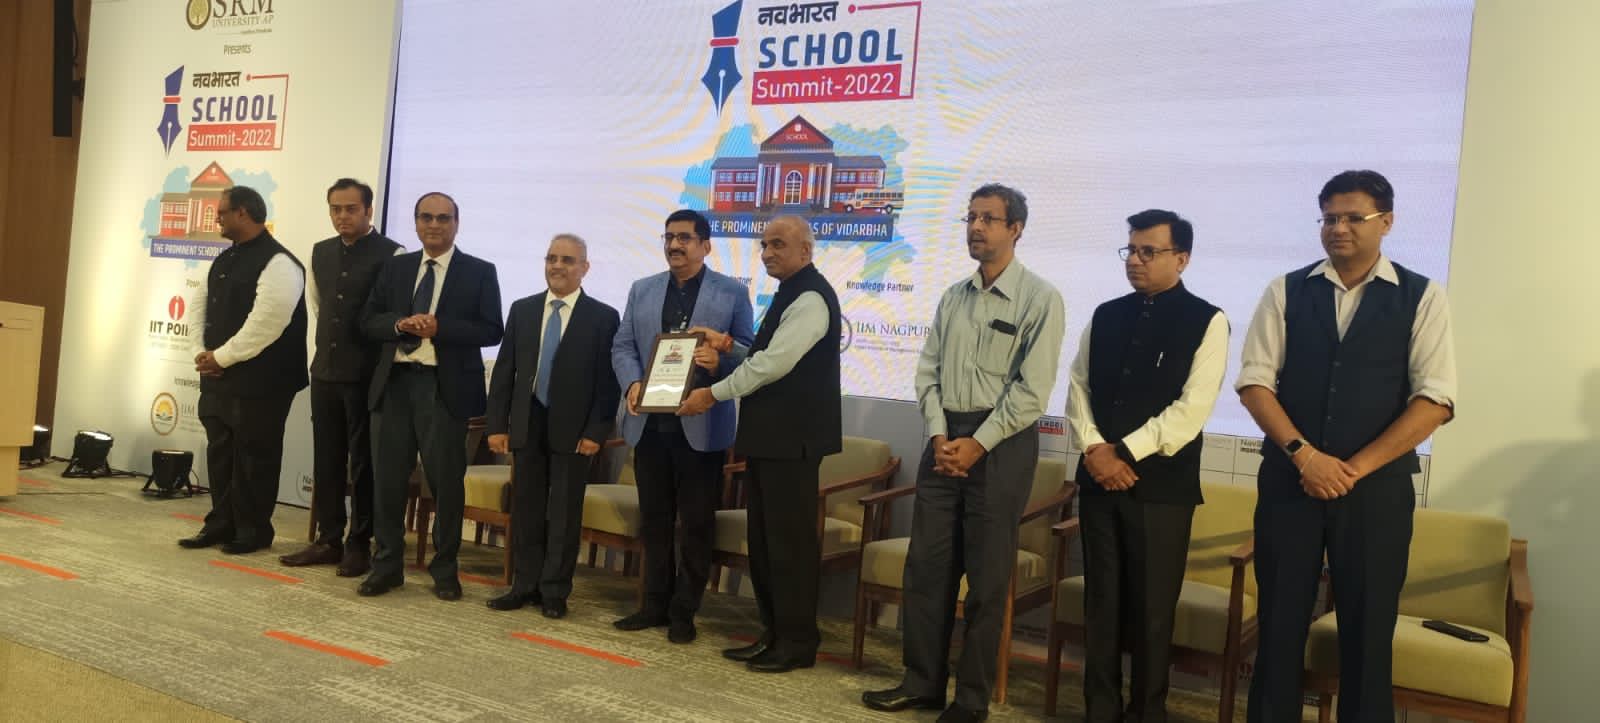 नवराष्ट्र गृप द्वारा आयोजीत IIM Nagpur ( Mihan) च्या कॅम्पस मधे Director IIM द्वारा मुनघाटे महाविद्यालयाचा पुरस्कार स्विकारतांना